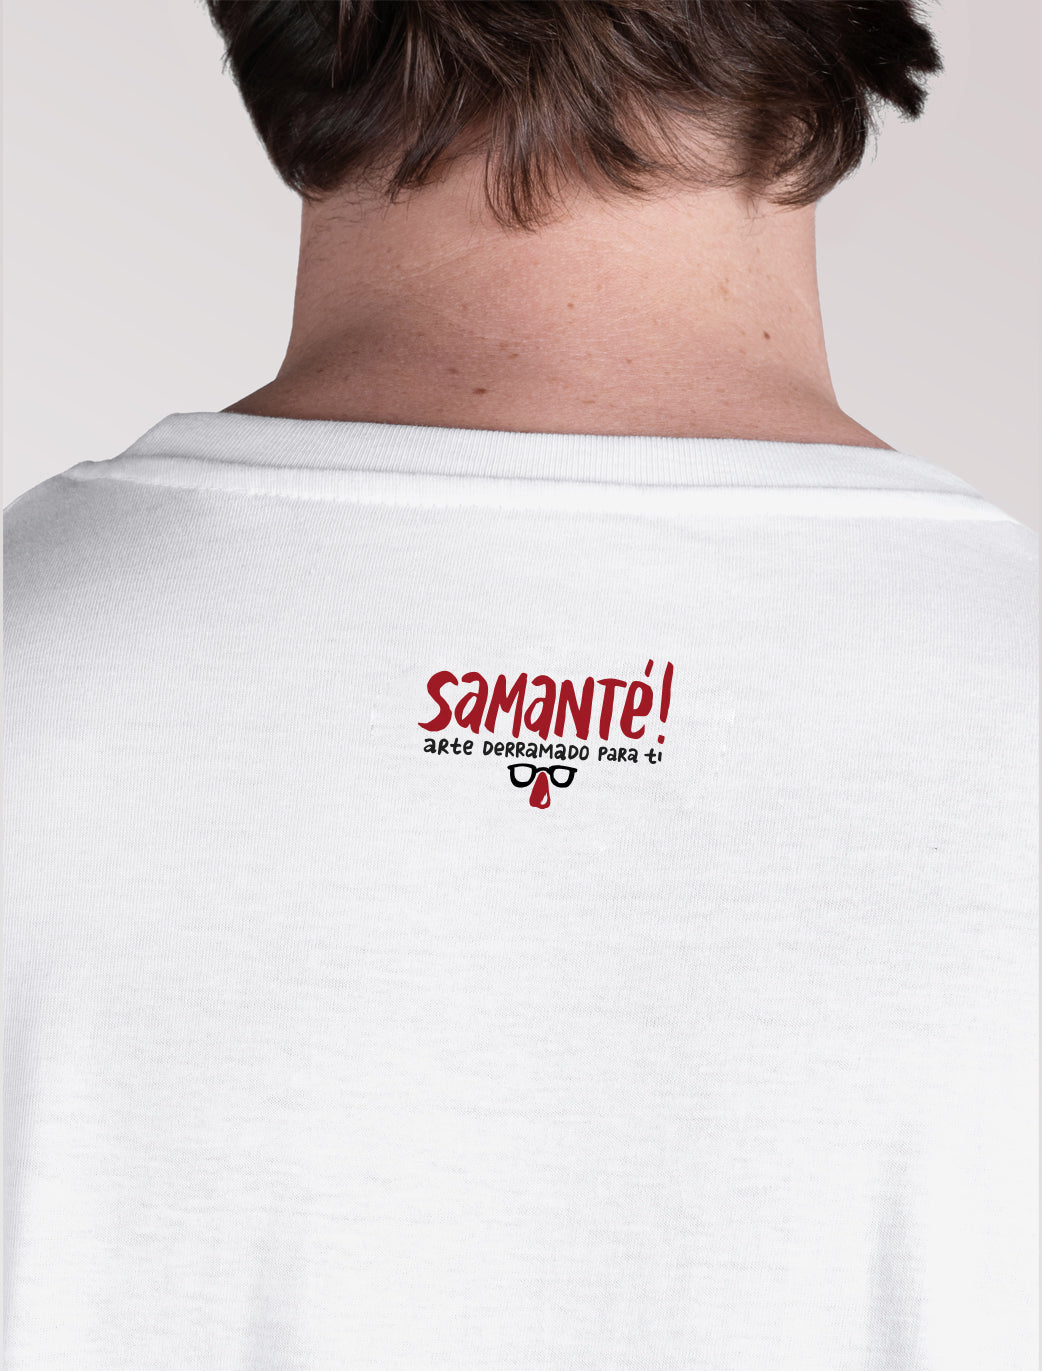 Camiseta x Guibo para Samanté!